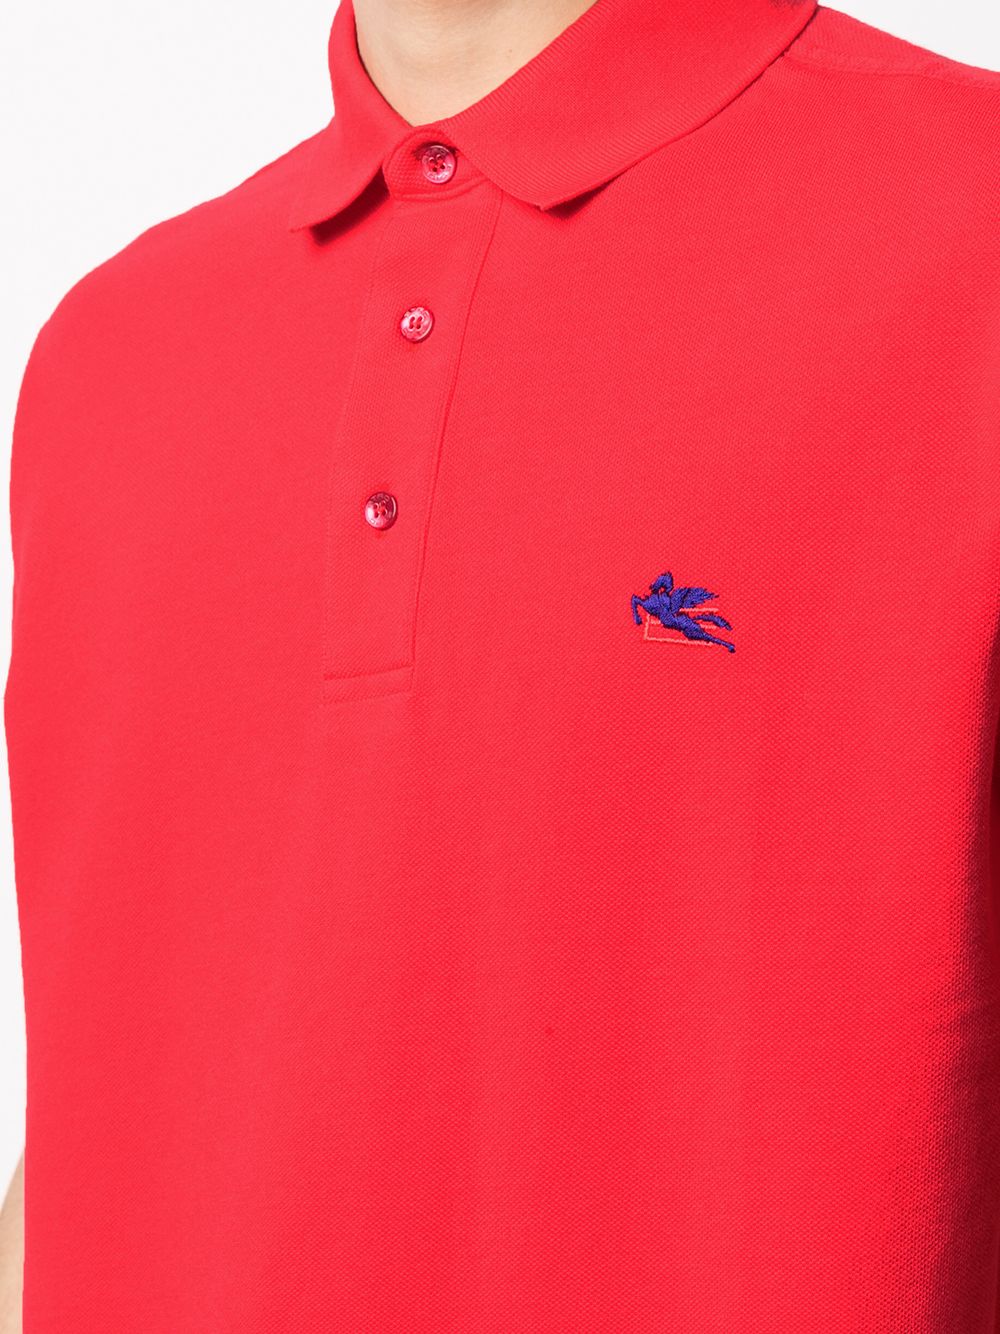 фото Etro рубашка поло с вышитым логотипом